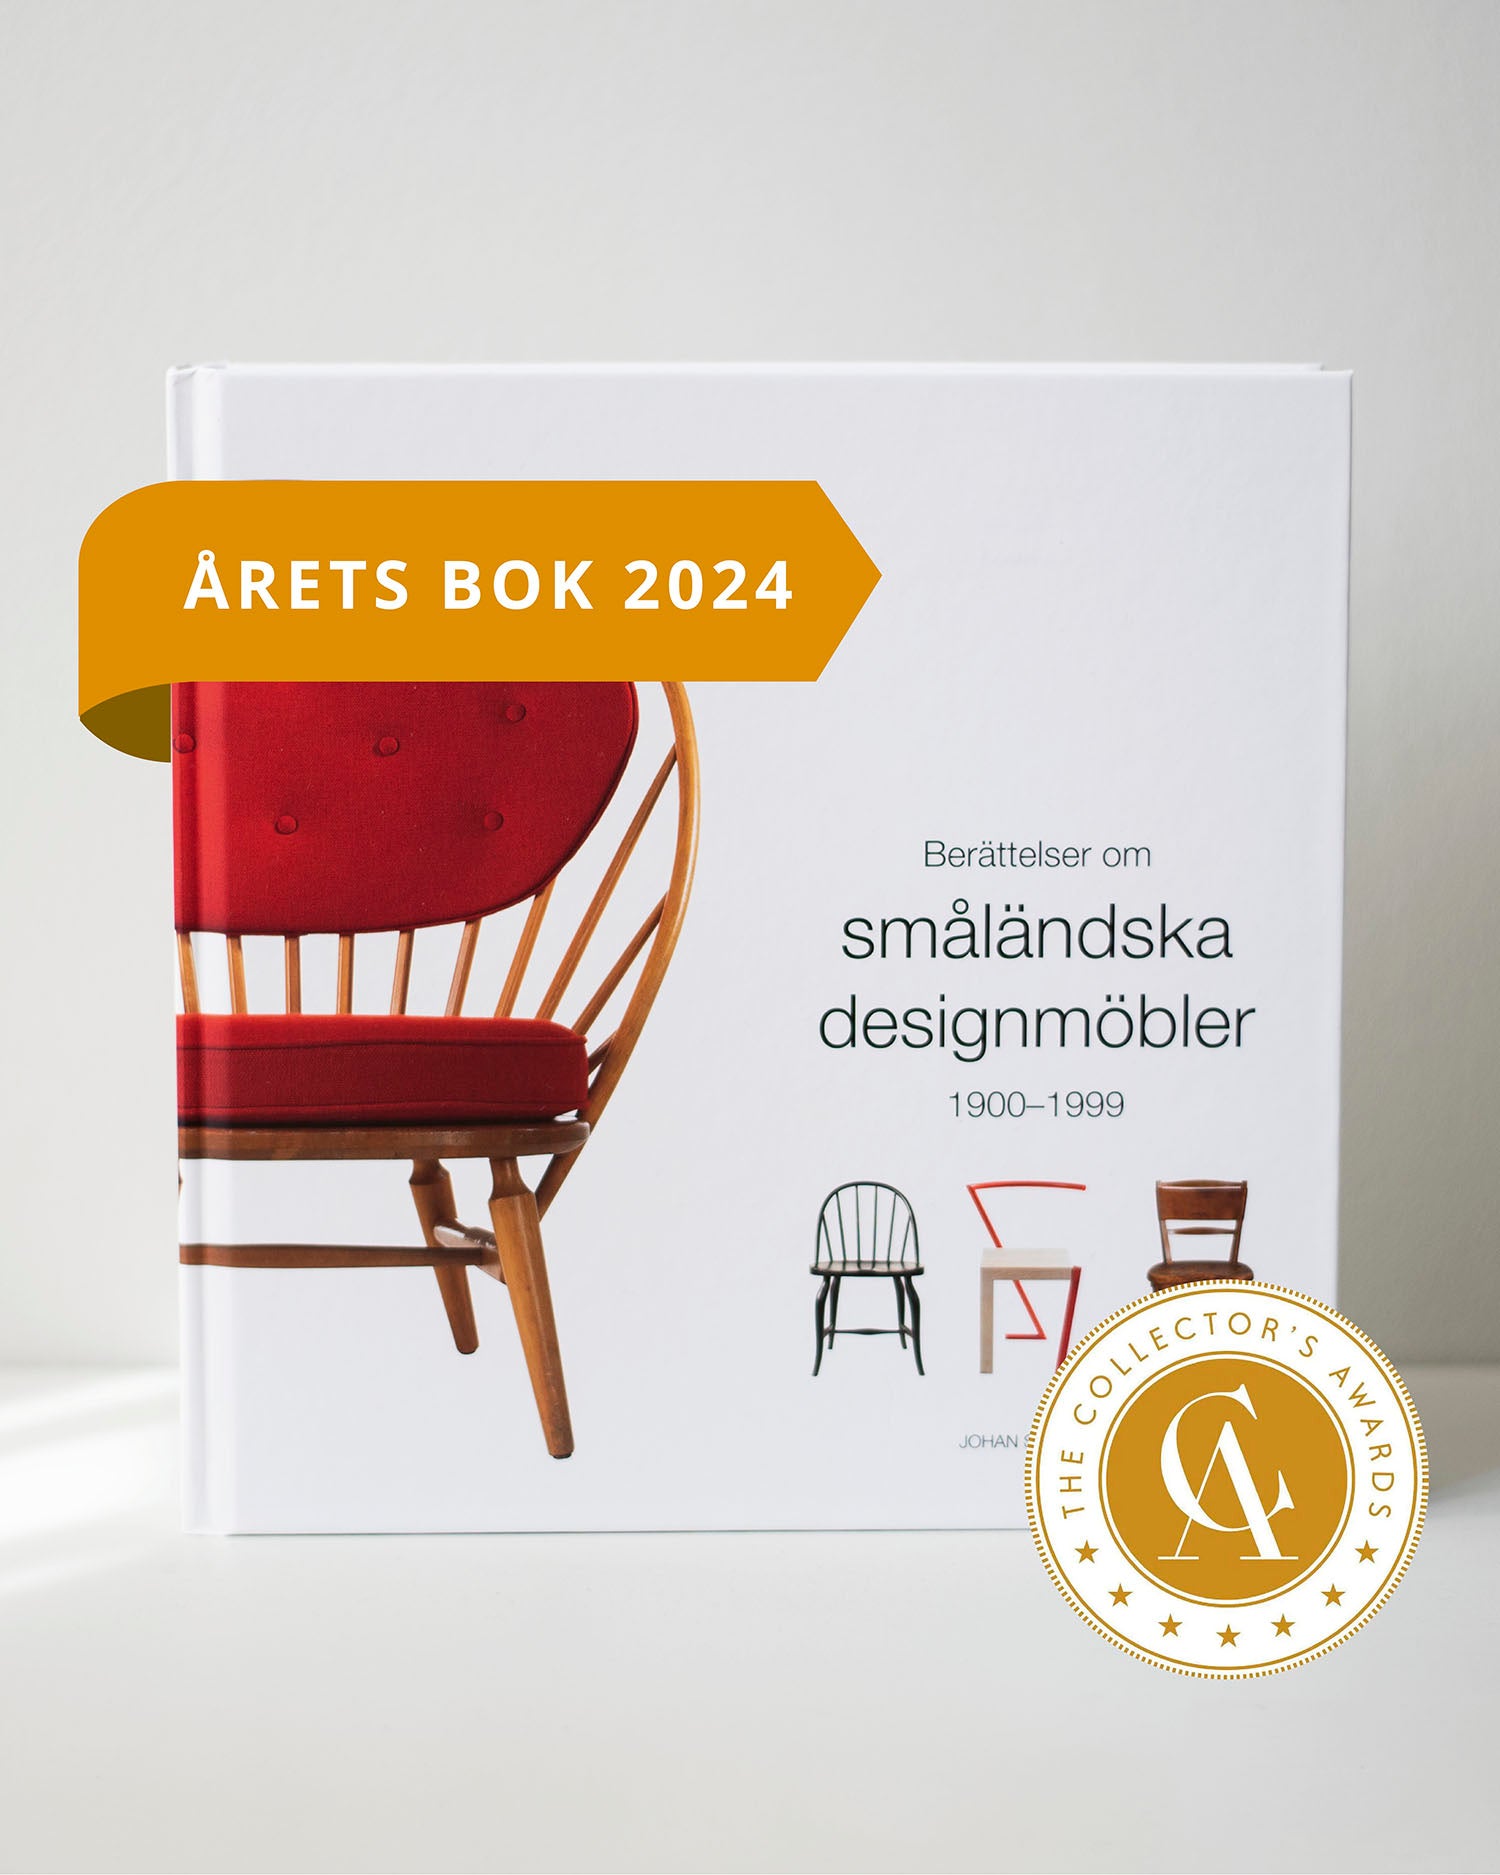 Berättelser om småländska designmöbler 1900-1999